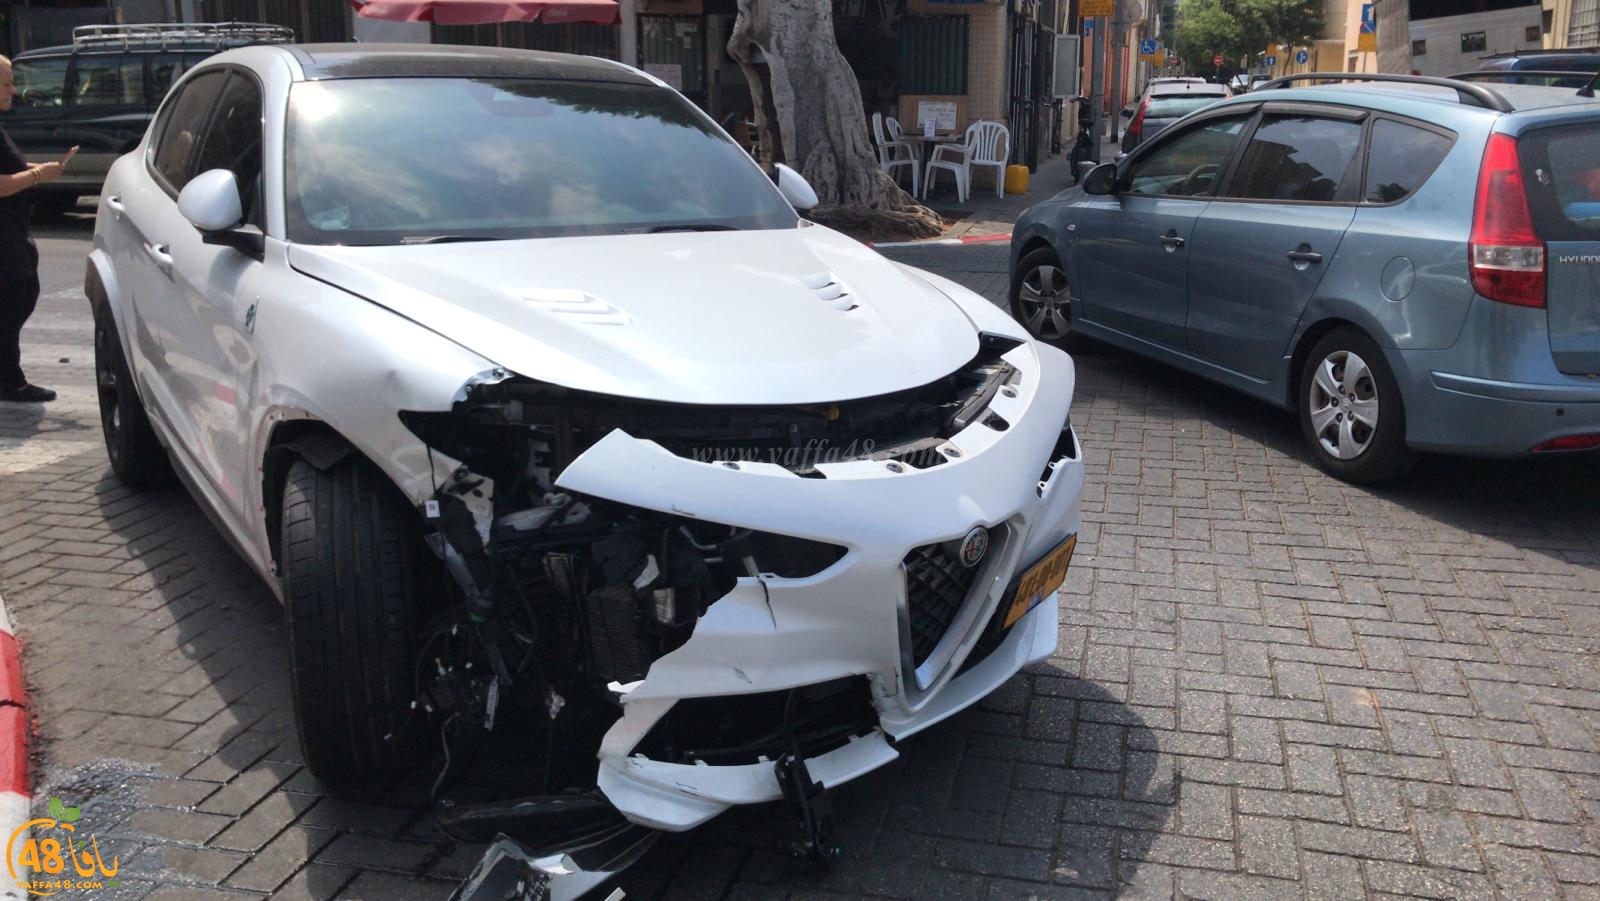   بالصور: اصابة طفيفة بحادث طرق متسلسل بين 4 مركبات في يافا 